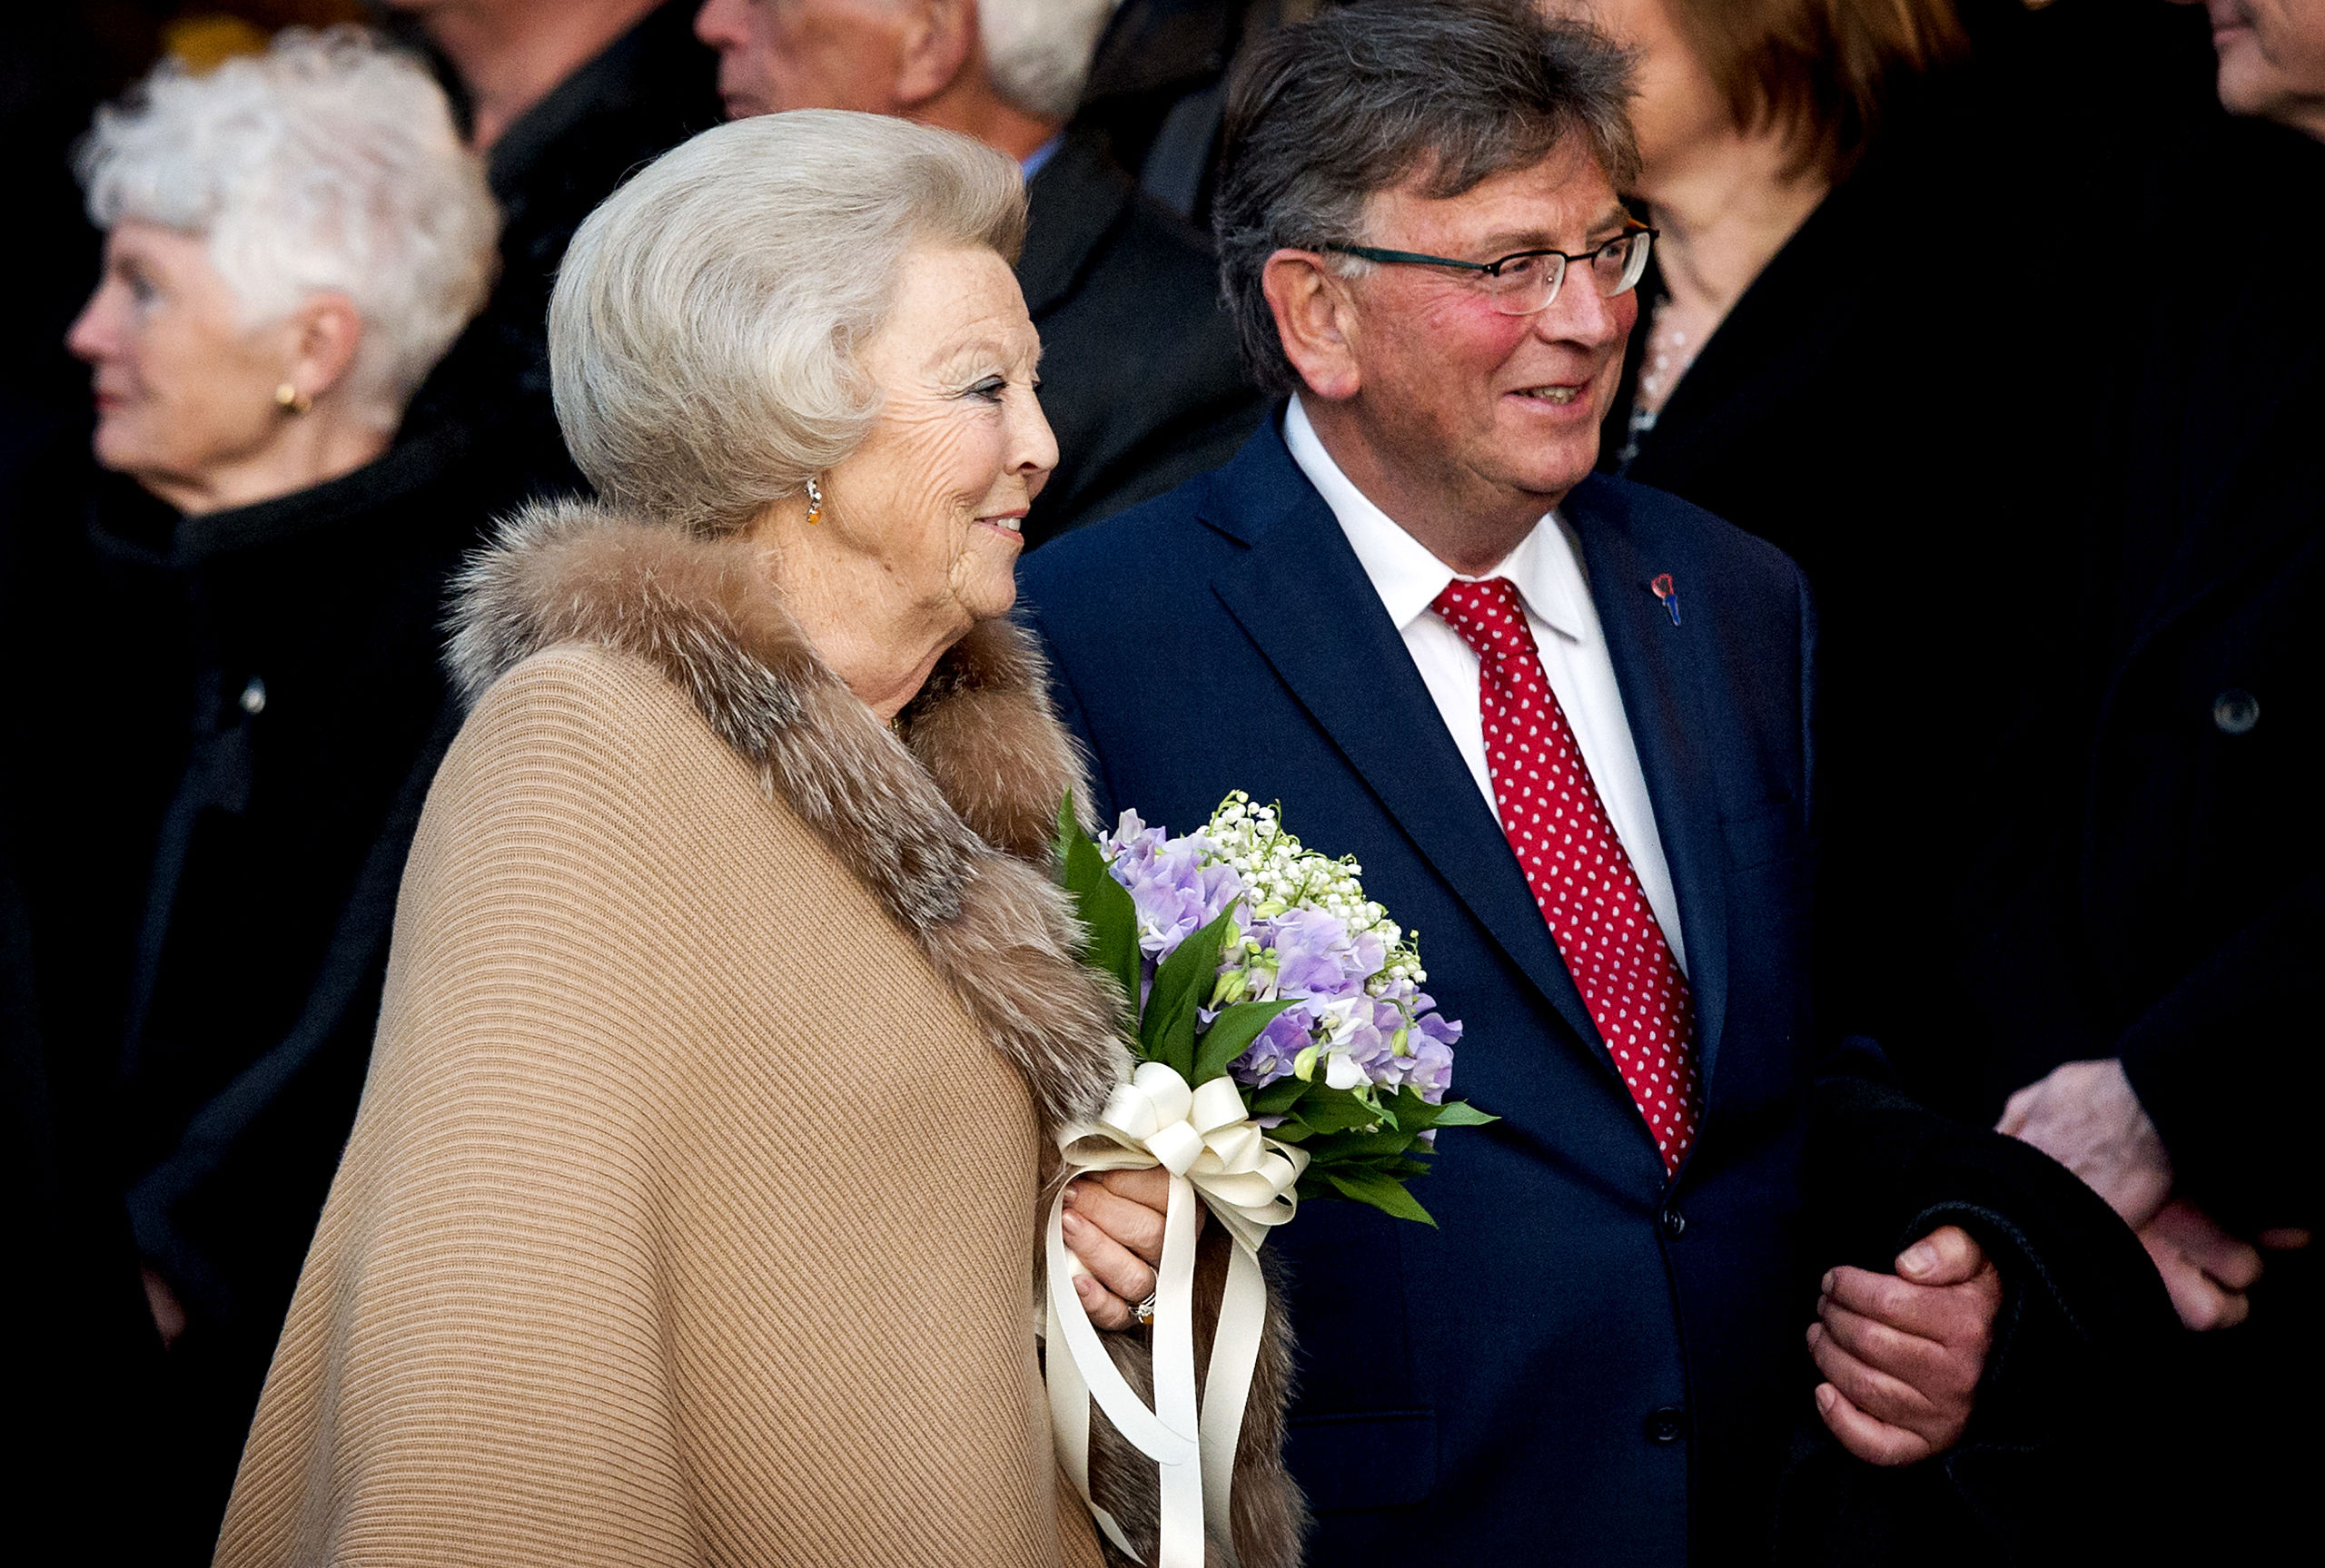 AMSTERDAM - Prinses Beatrix samen met Jacques Wallage tijdens het Bevrijdingsconcert in 2015.